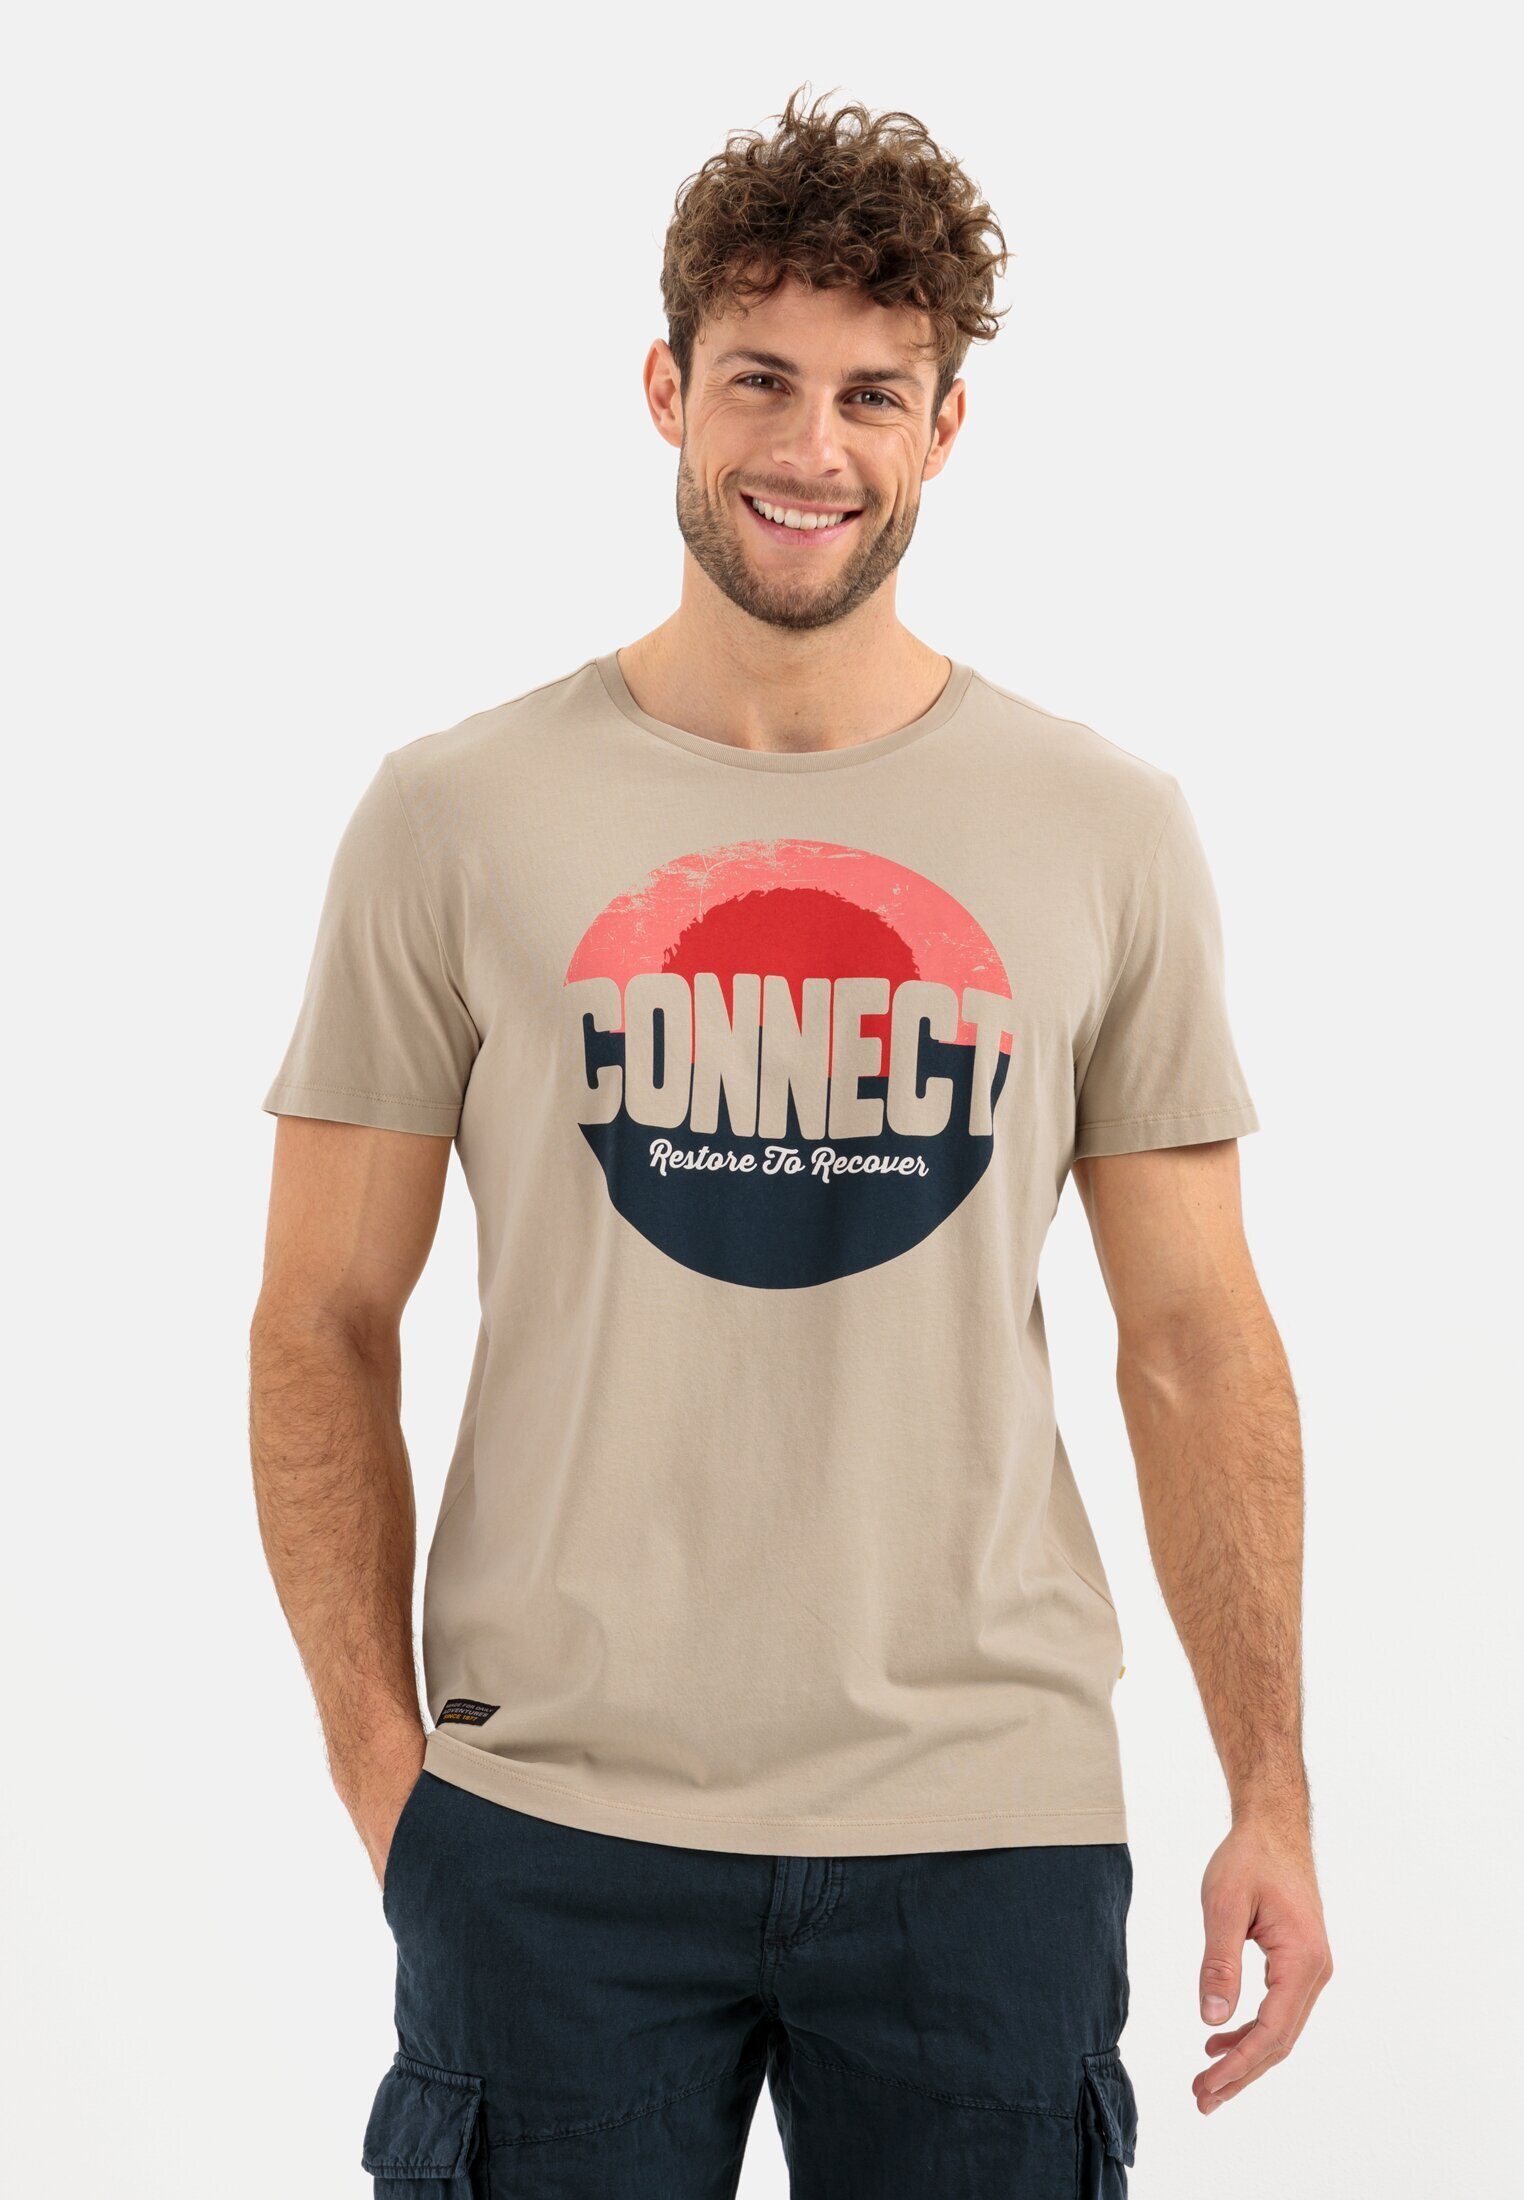 Hattric camel active T-Shirt aus Beige Bio-Baumwolle